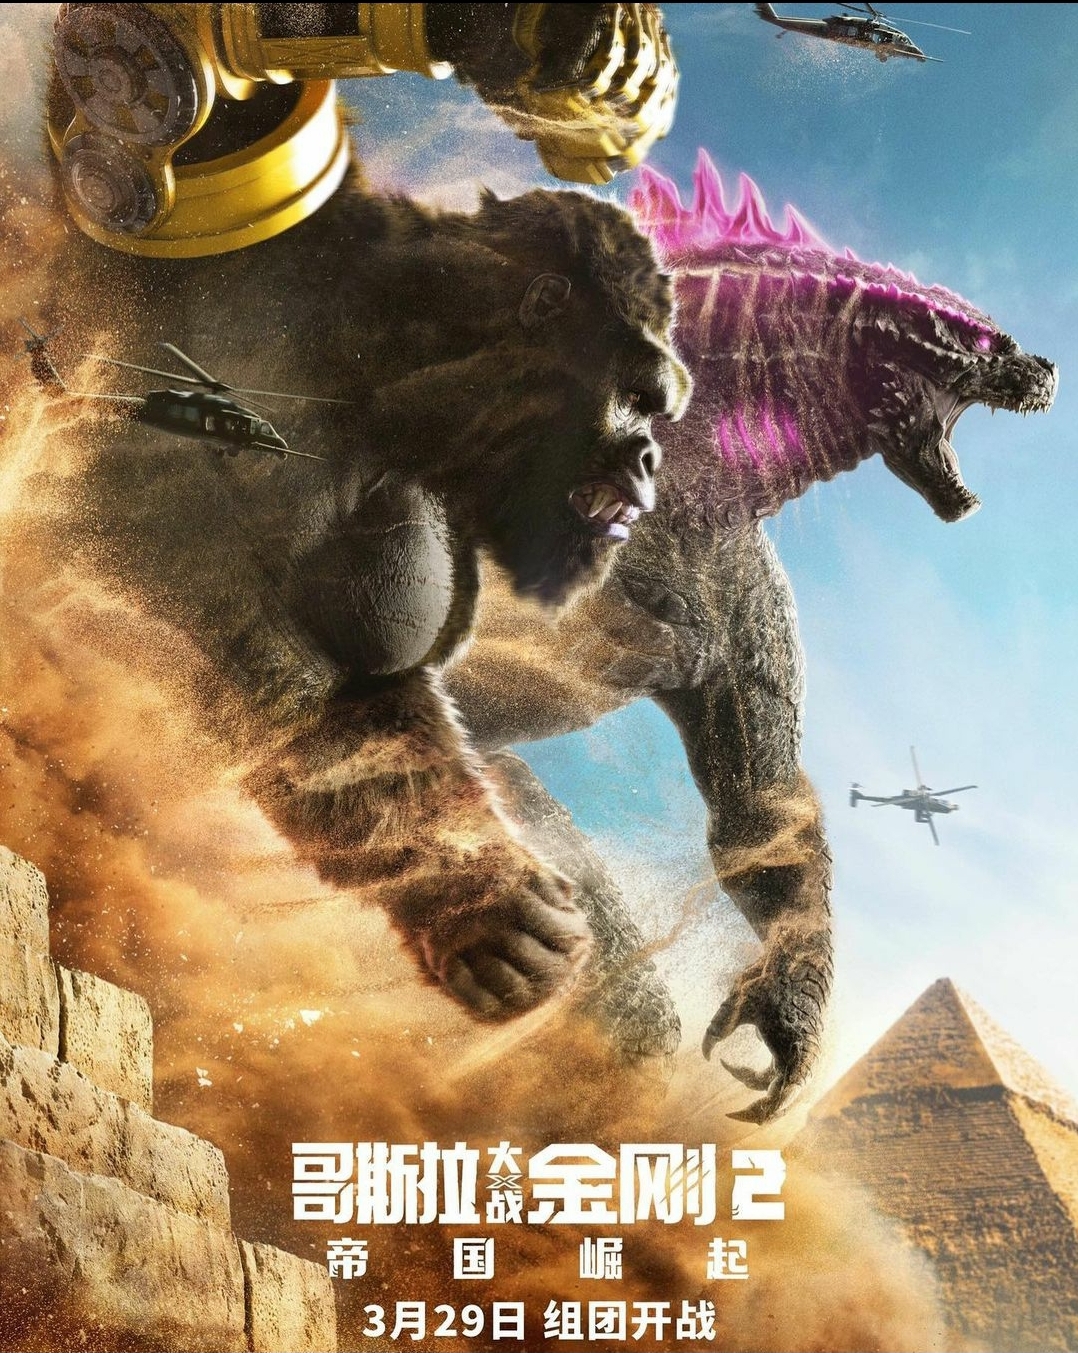 Godzilla x Kong Chinese Poster